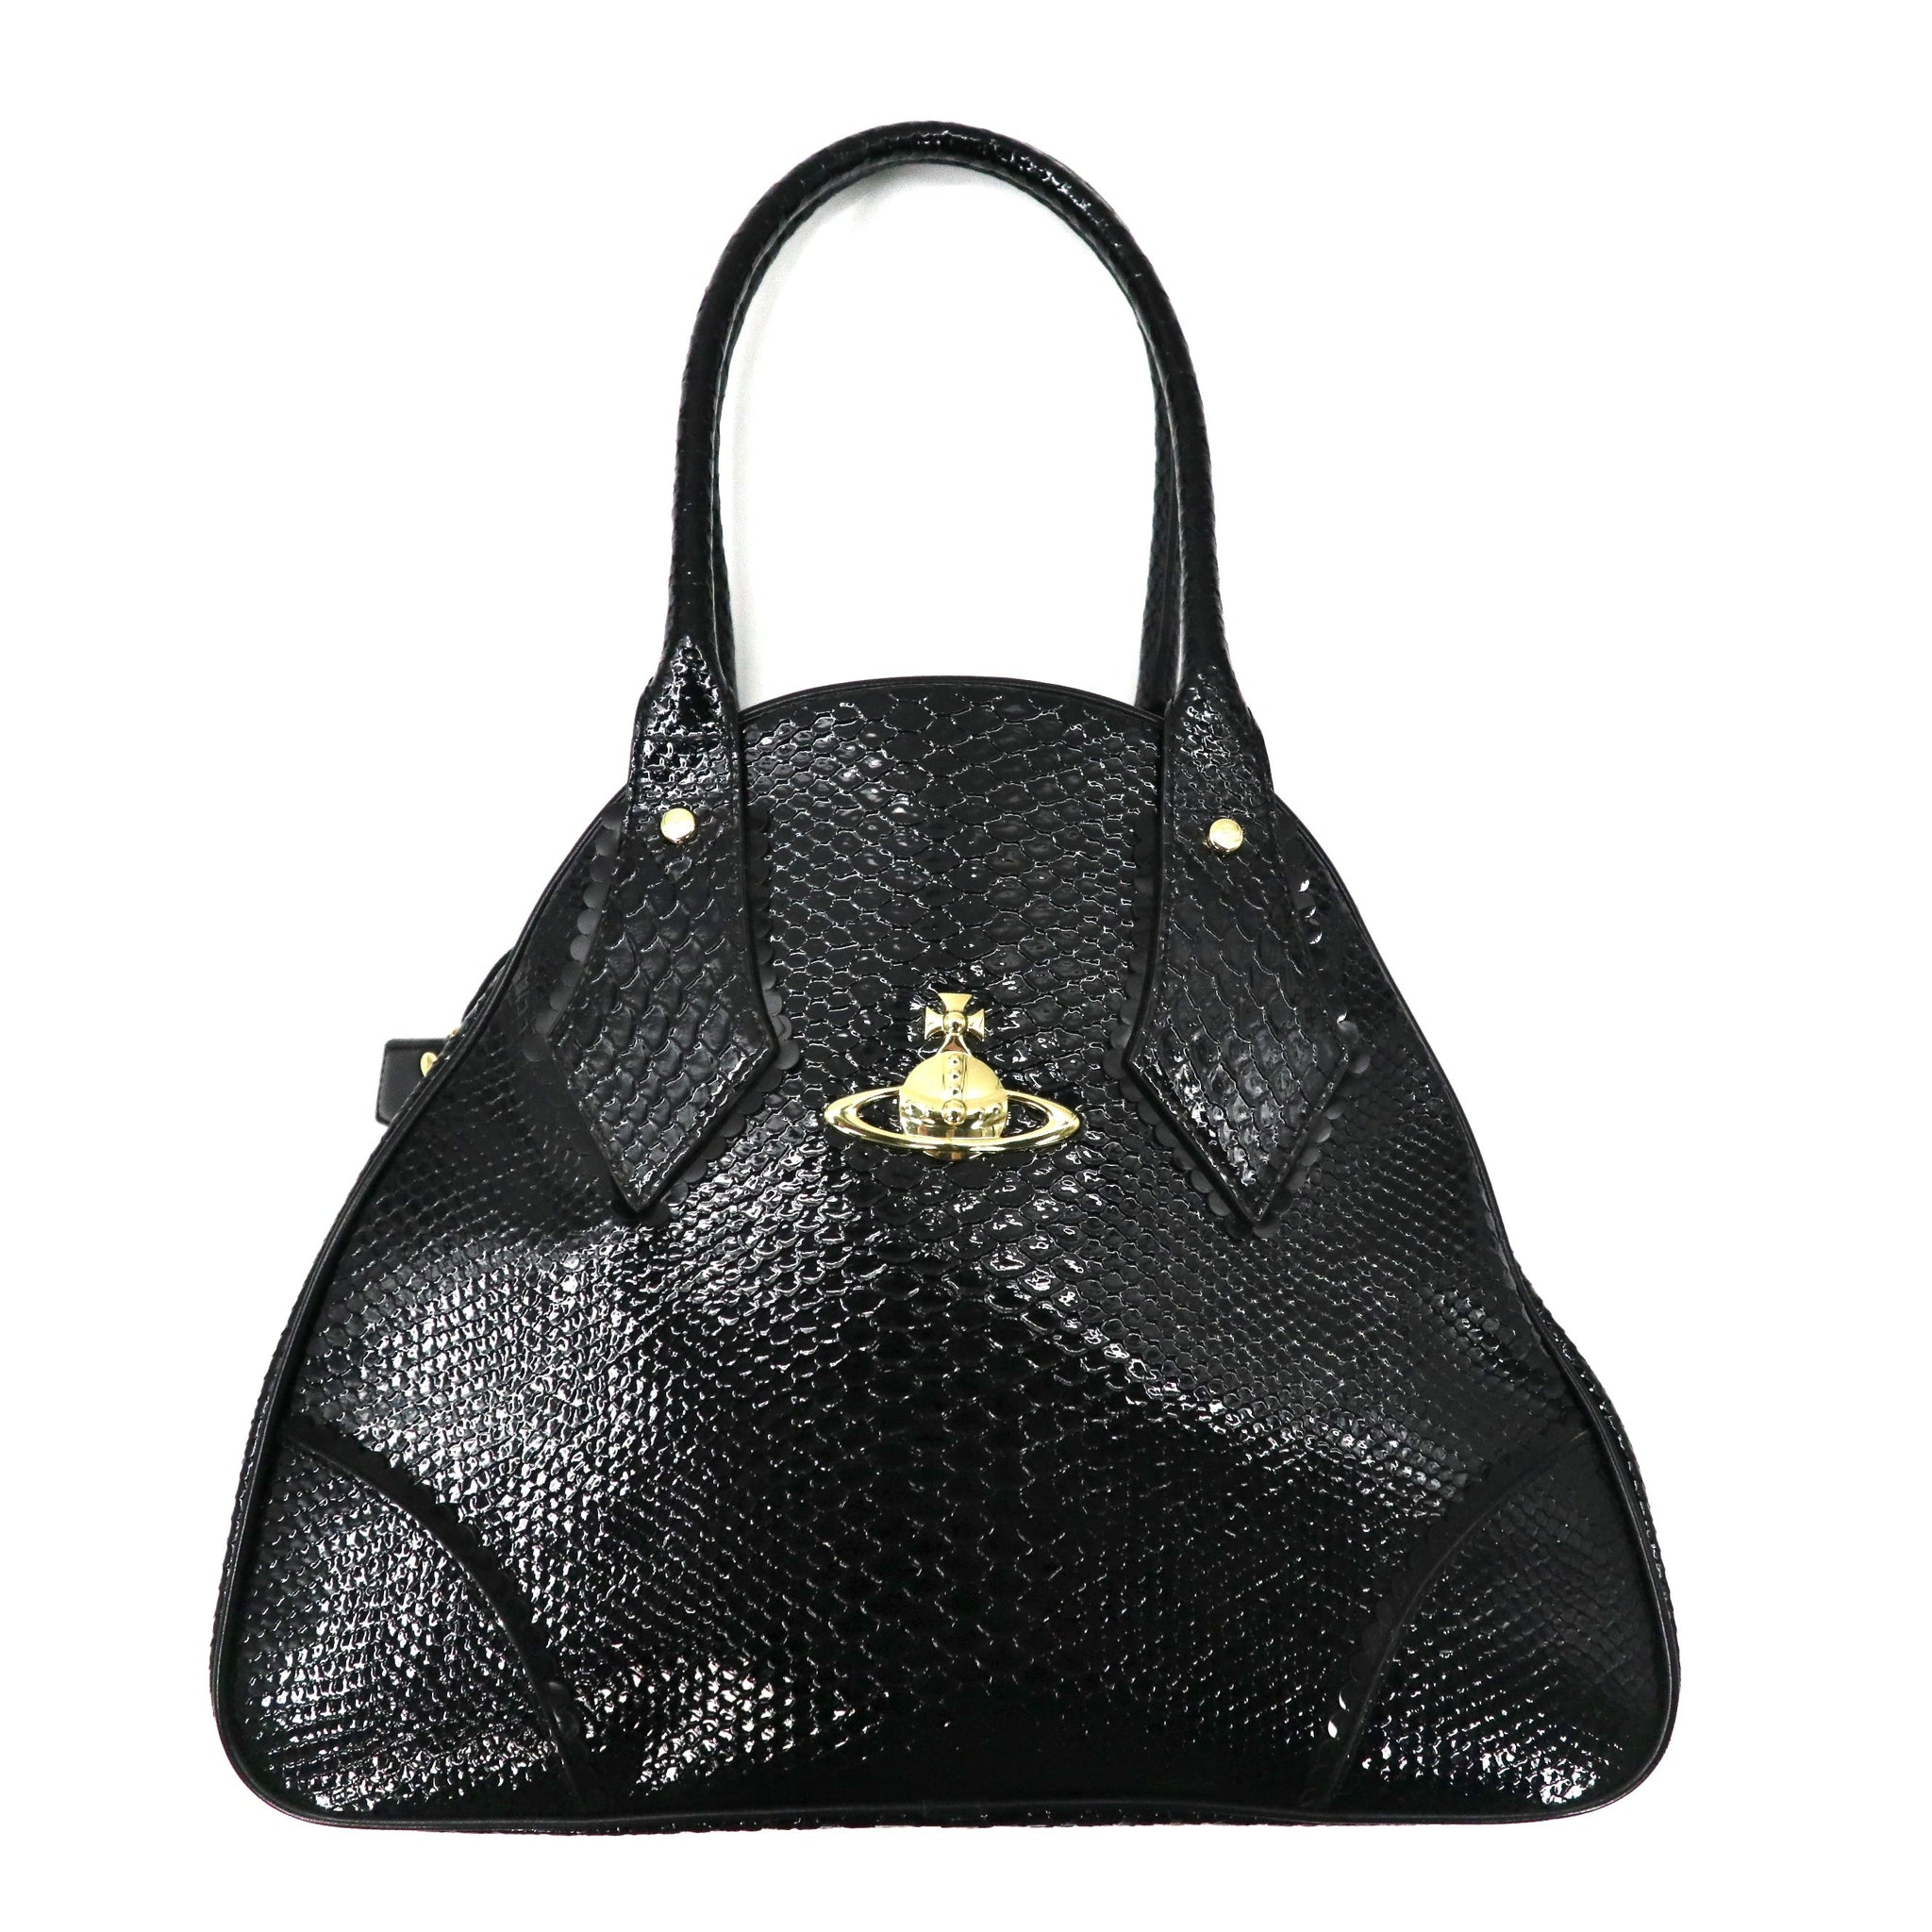 VIVIENNE WESTWOOD Handbag Black Leather Frilly Snake 12-02 